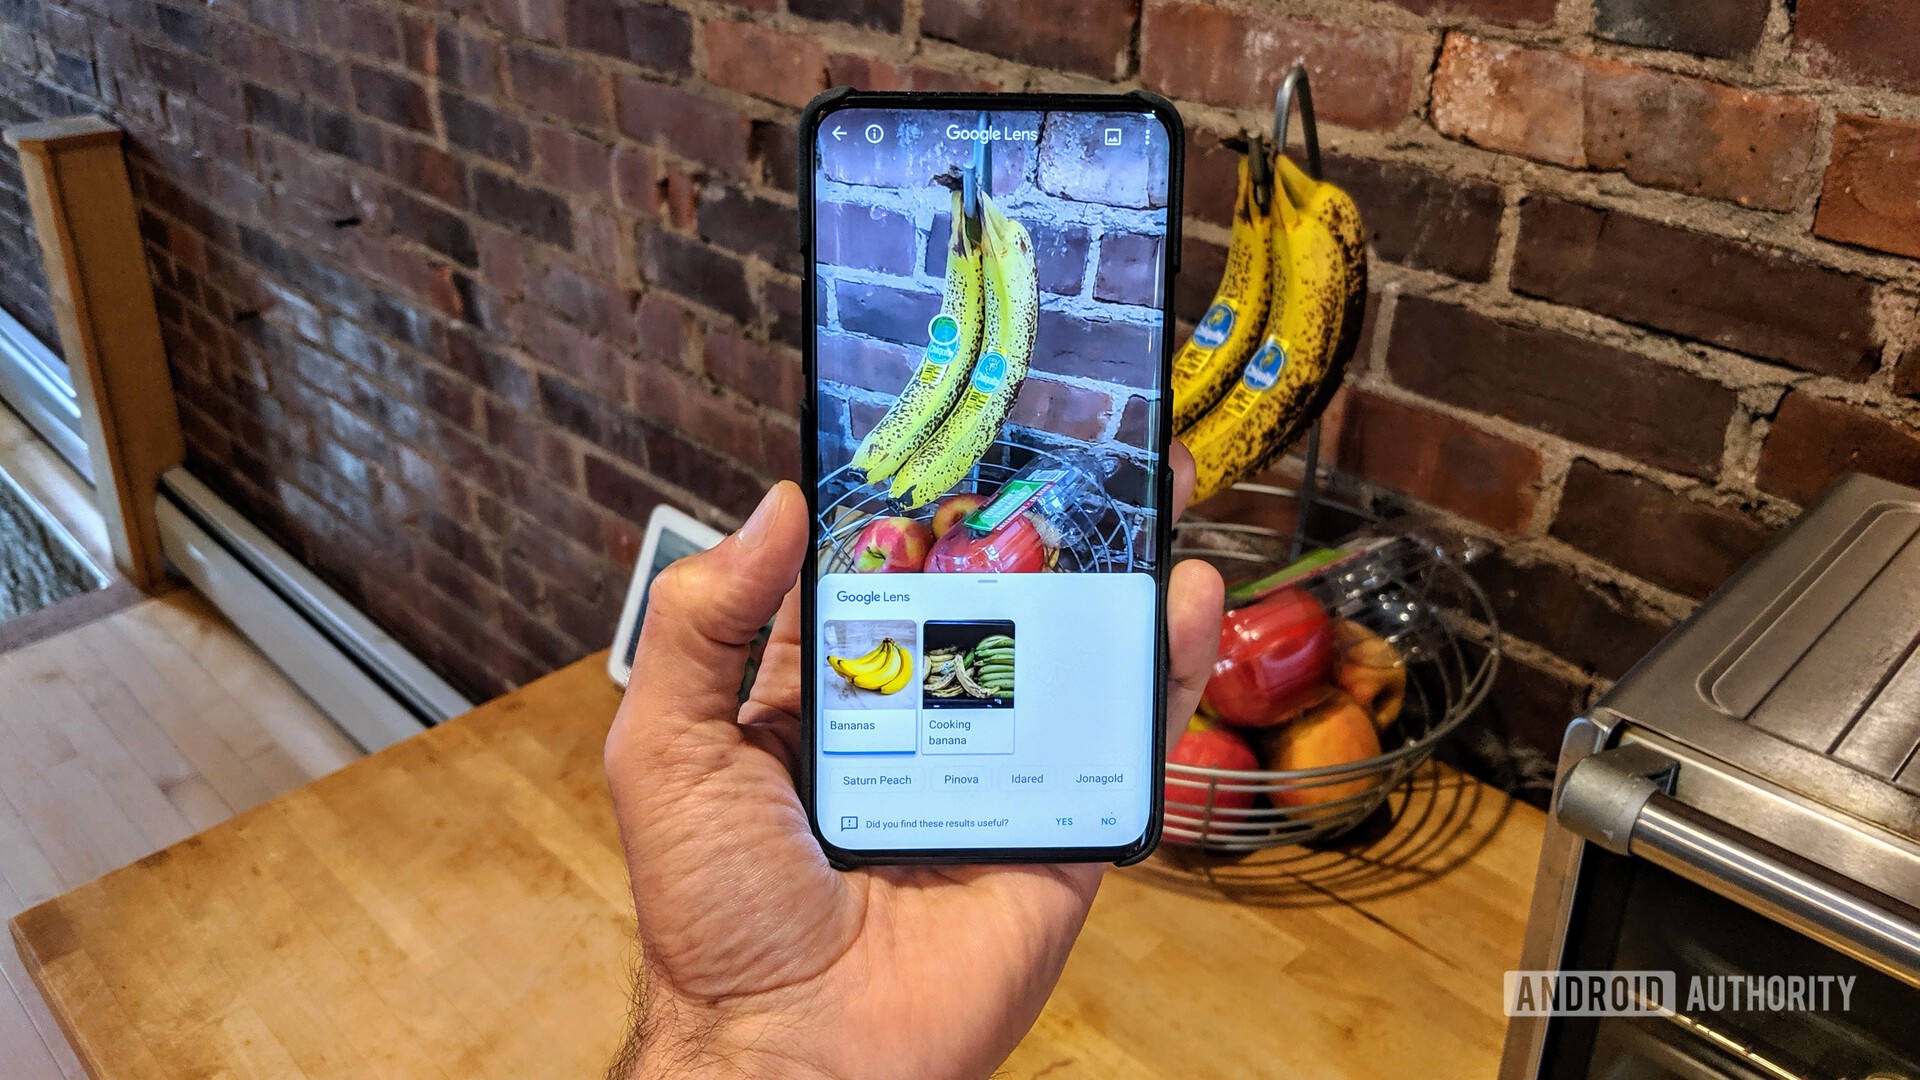 使用Google镜头来识别OnePlus 7 Pro相机上看到的一堆香蕉。